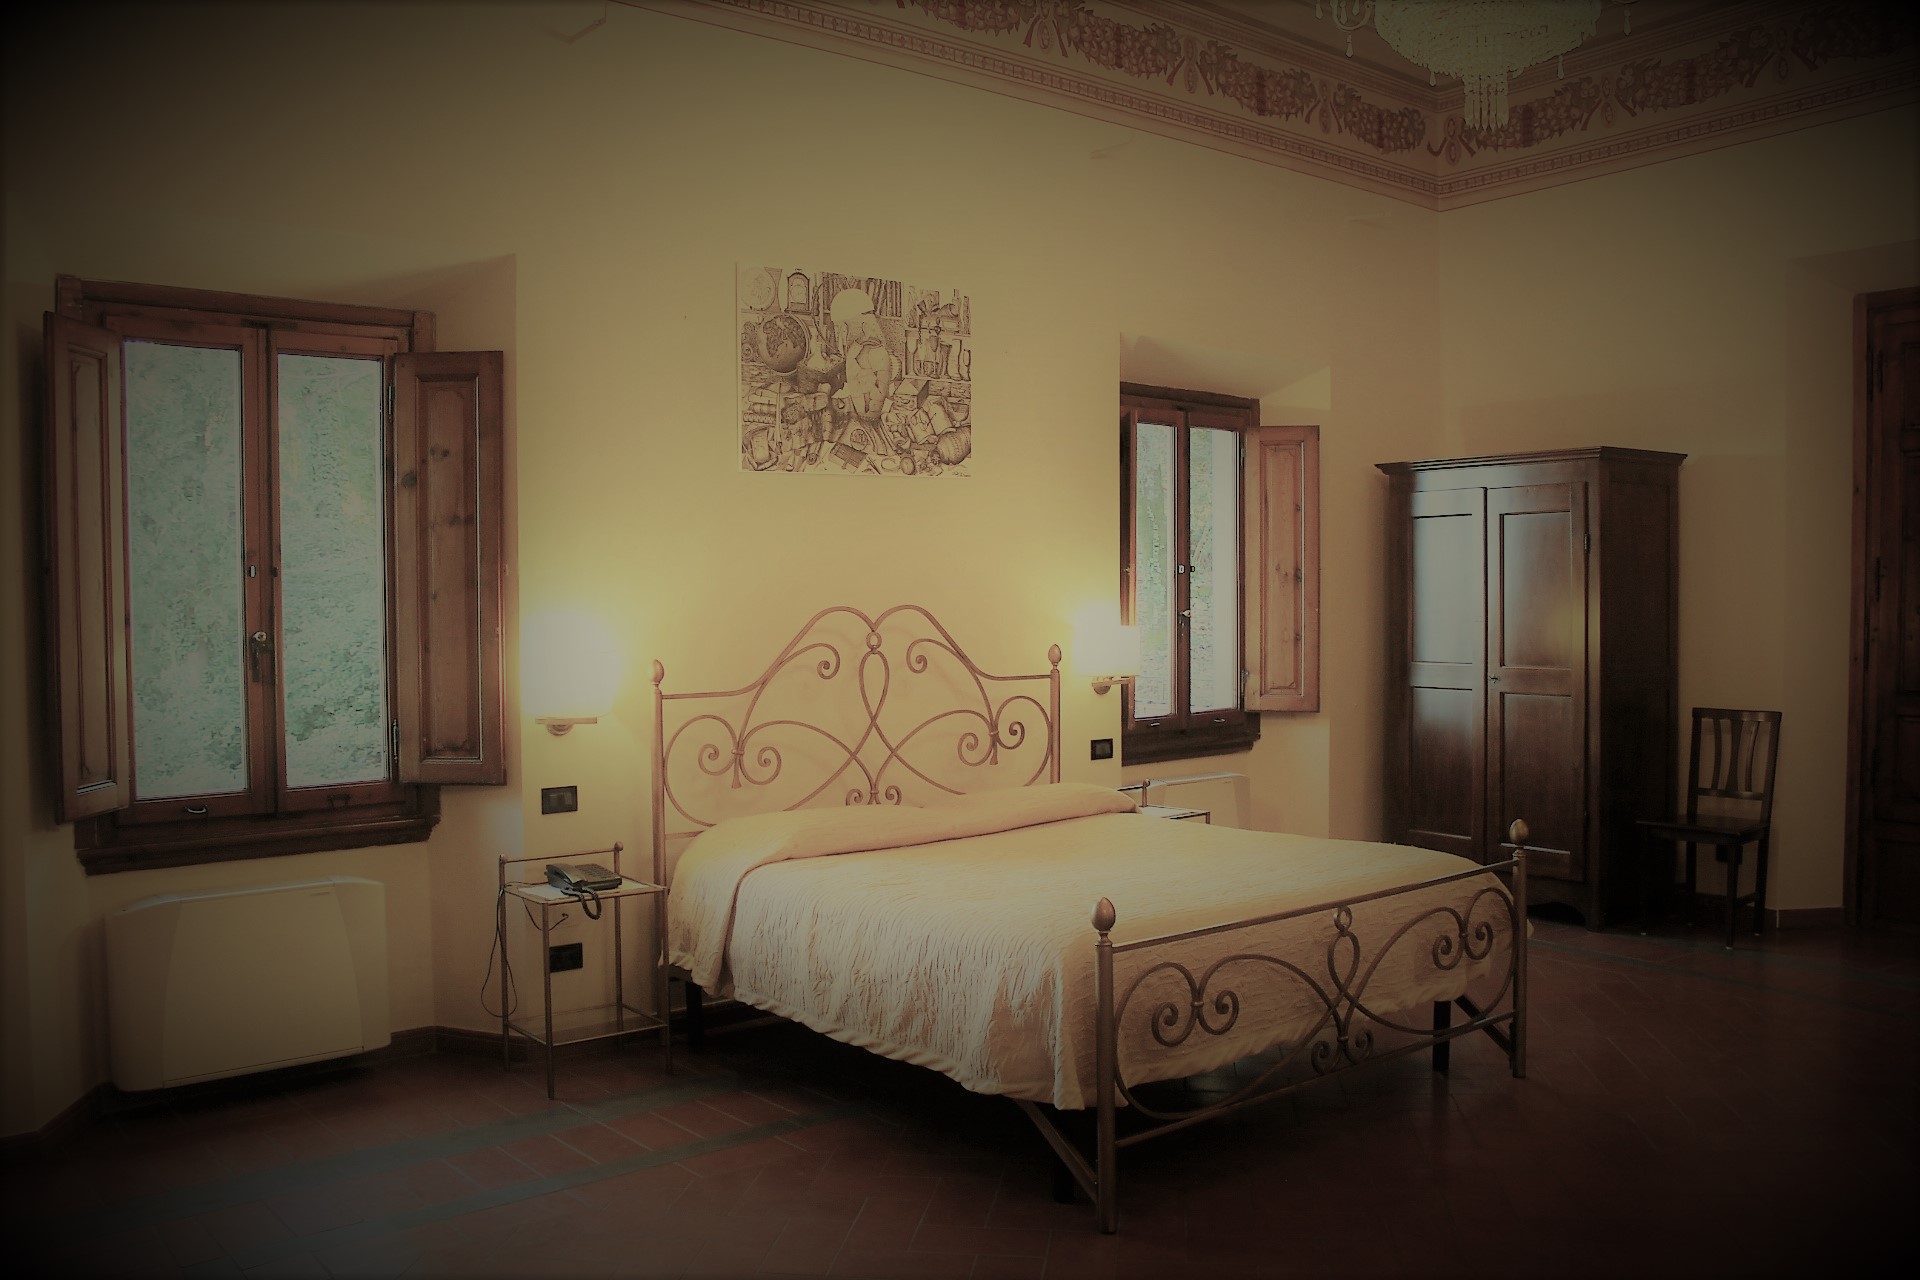 Residence Casa Volpi - Ristorante & Hotel Arezzo